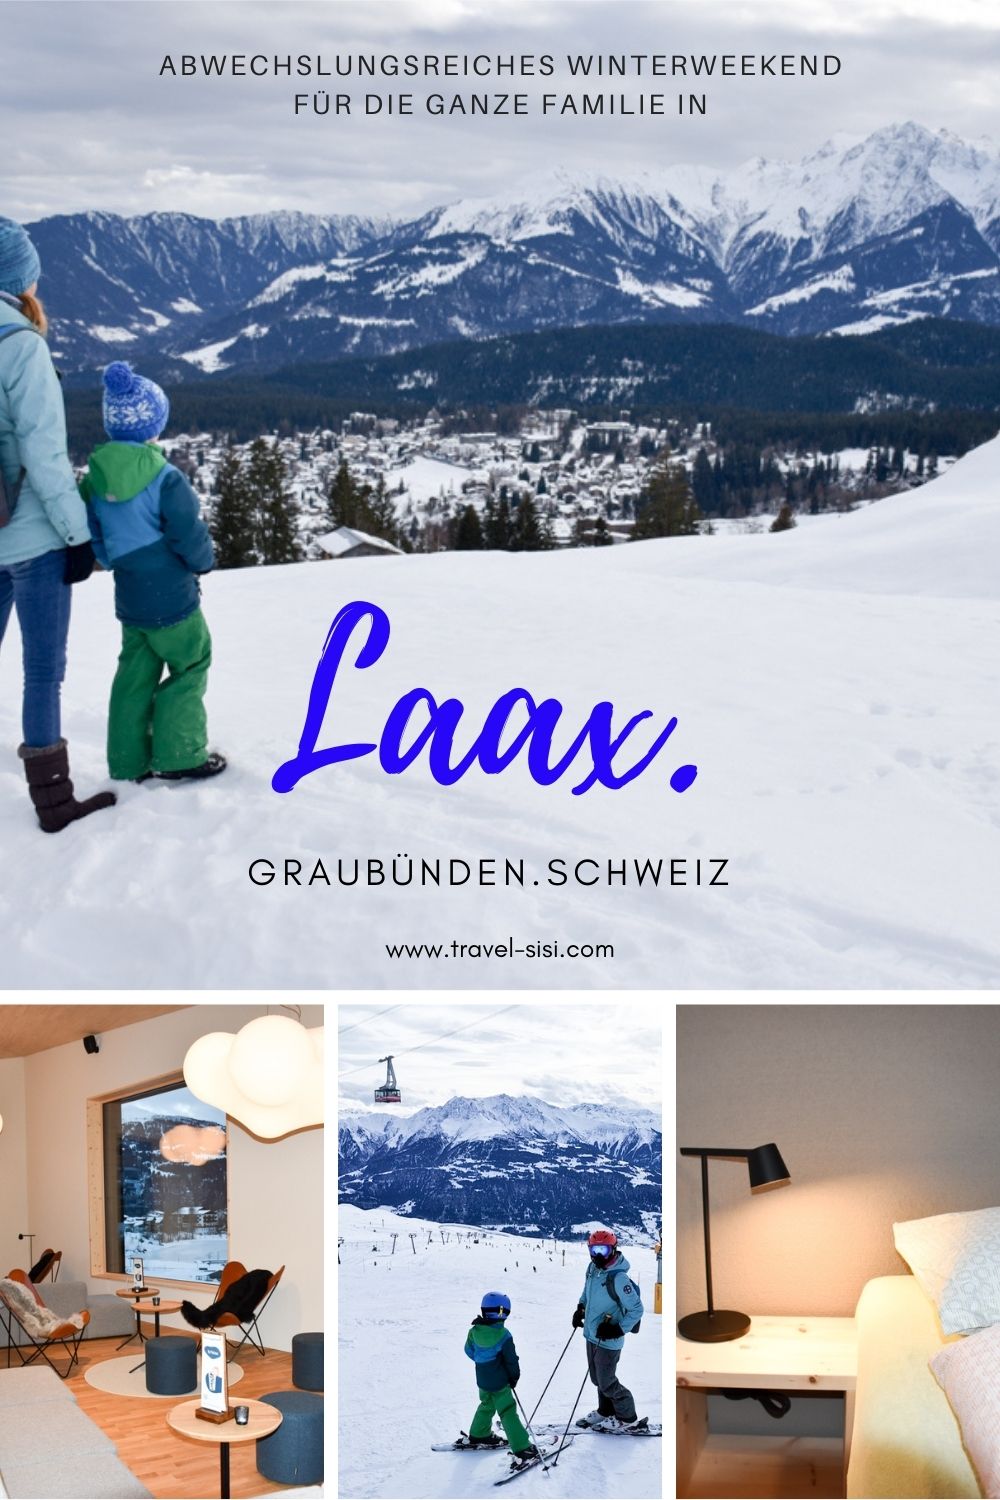 Familienfreundliches Winterweekend Laax Graubünden Schweiz